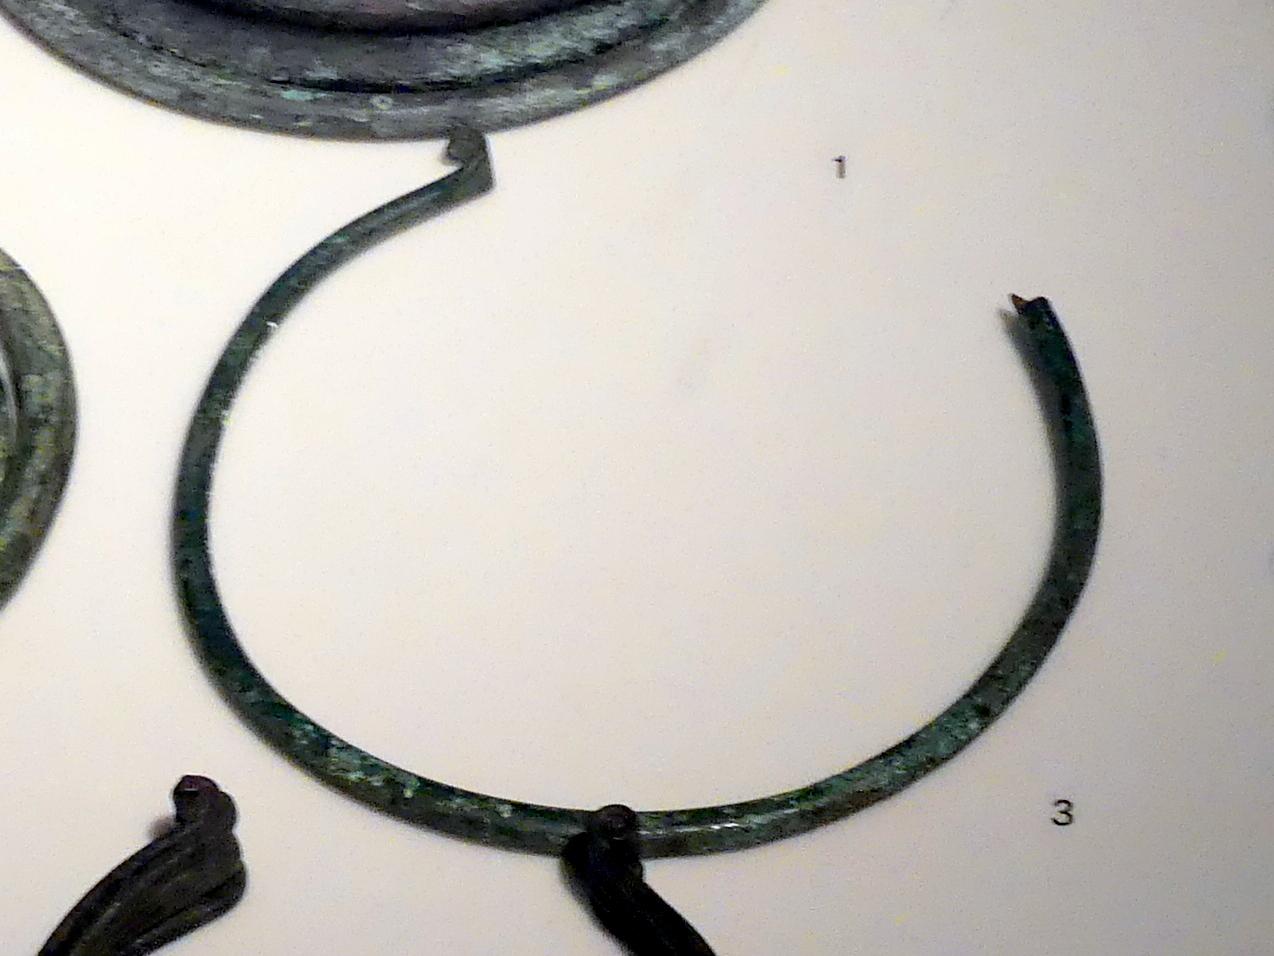 Halsringbarren, Frühe Bronzezeit, 3365 - 1200 v. Chr., 2200 - 1700 v. Chr., Bild 1/2